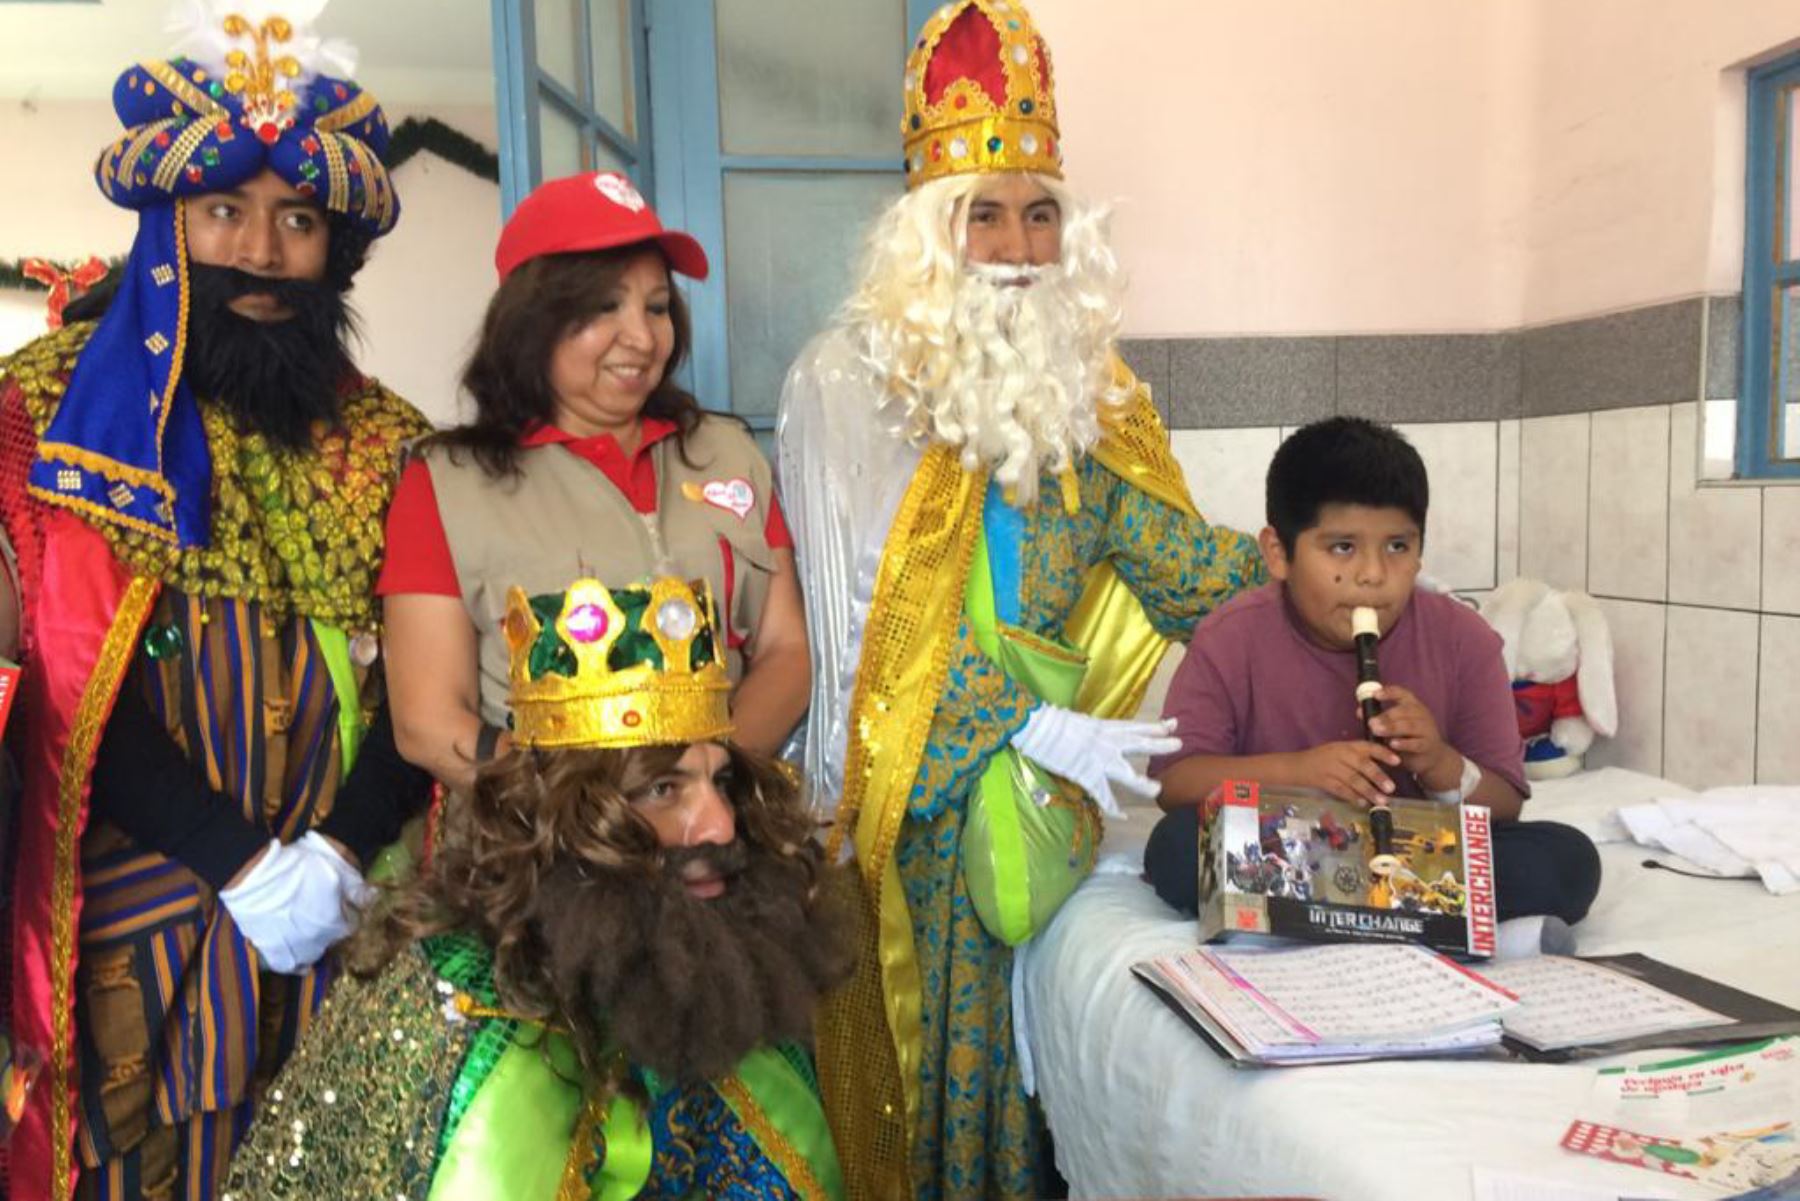 Melchor, Gaspar y Baltazar visitaron a niños hospitalizados en la ciudad de Arequipa.